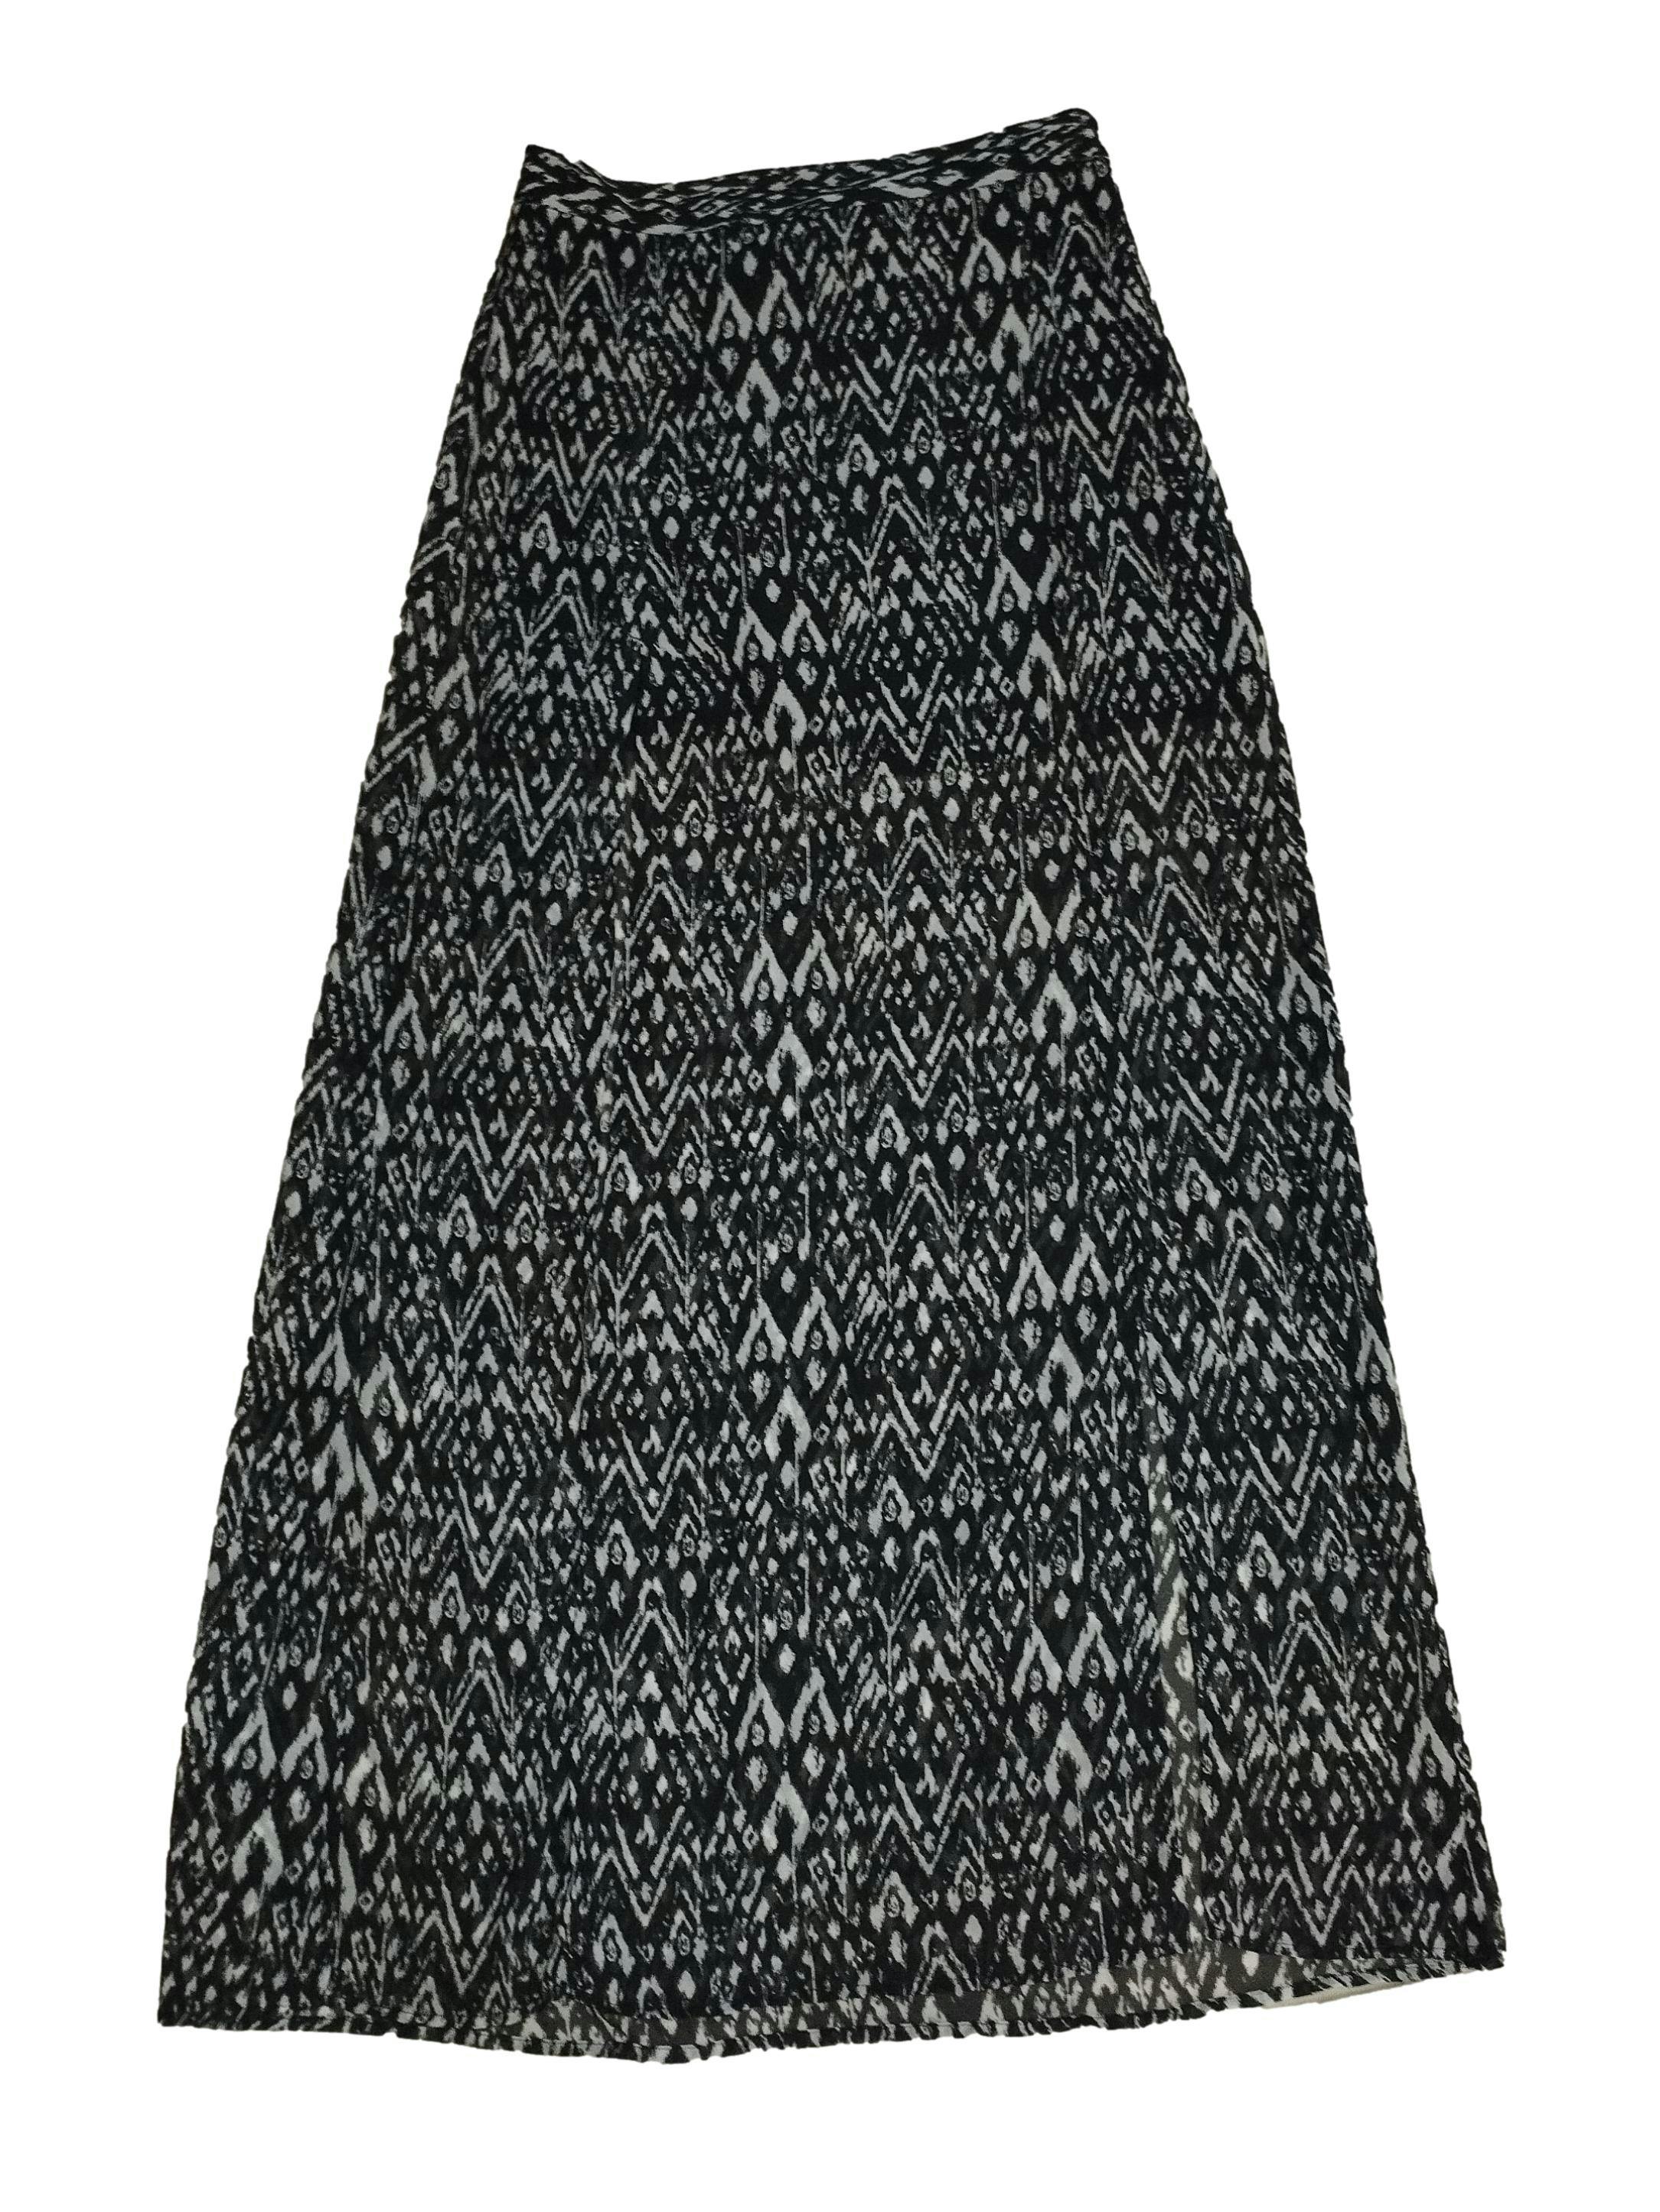 Falda H&M de gasa estampado de cebra, con forro, aberturas delanteras, cierre invisible posterior y elástico posterior. Cintura: 70 cm, Largo: 109 cm. Nuevo con etiqueta.